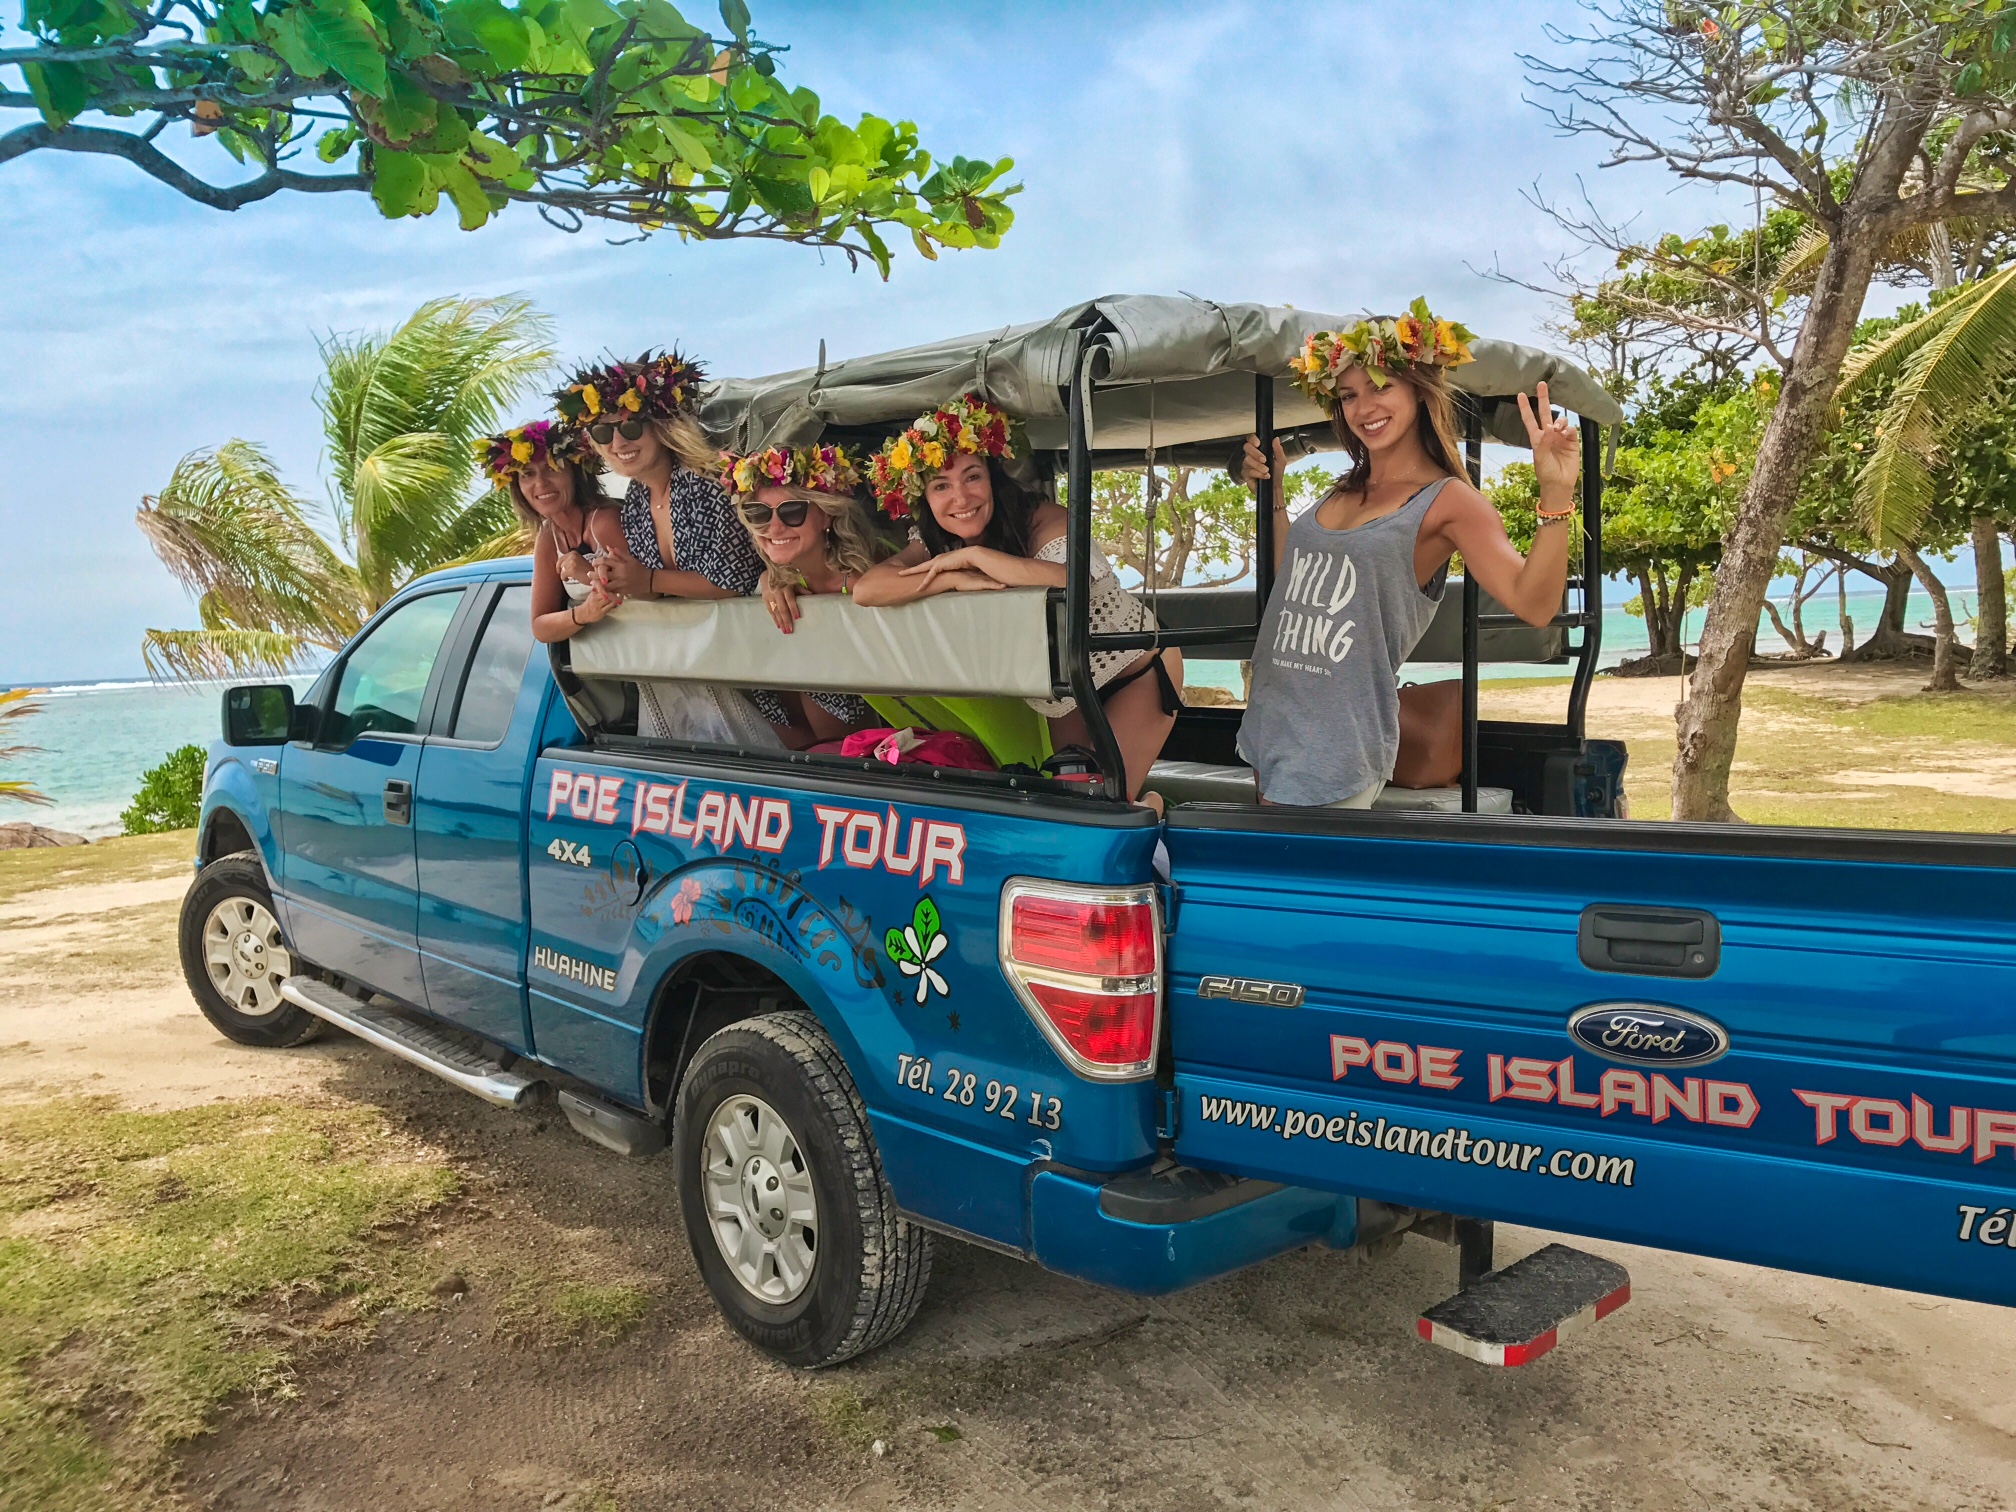 Na camionete da Poe Island Tour (Poetaina), conhecendo a ilha de Huahine